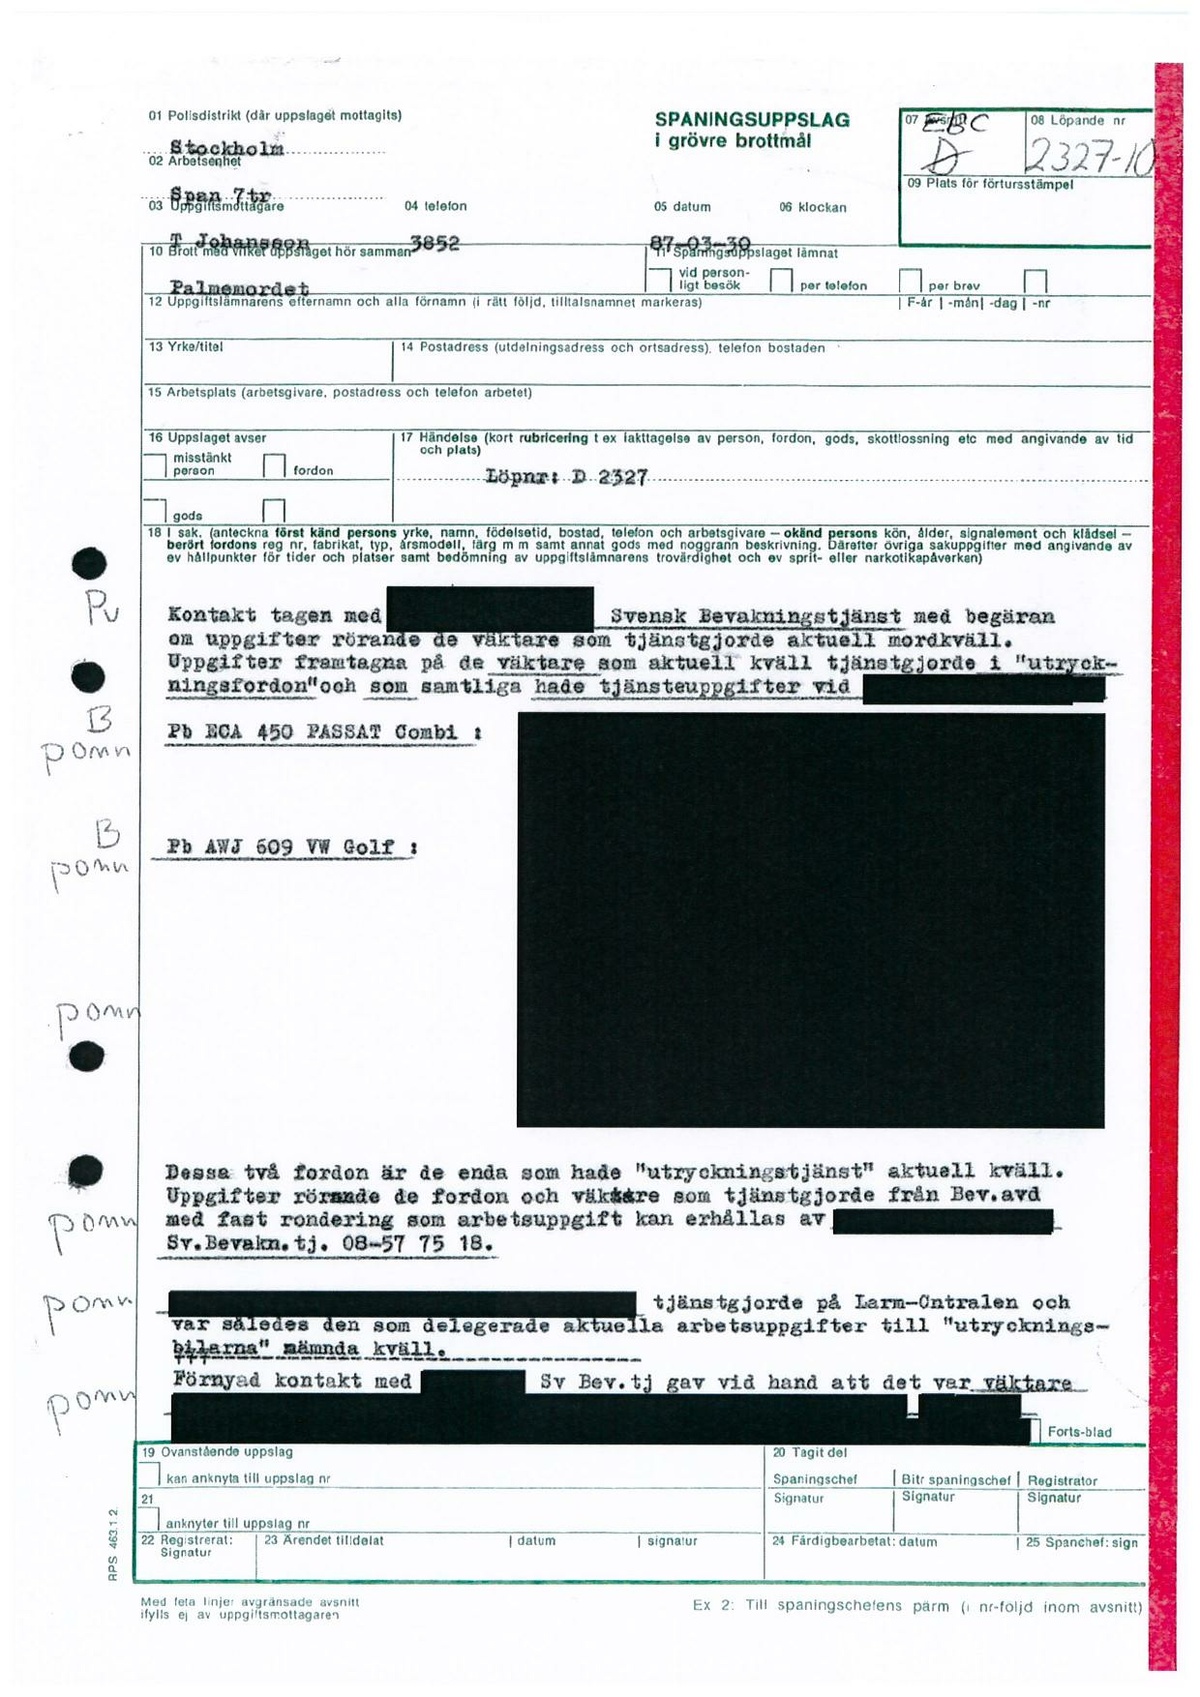 Pol-1987-03-30 EBC2327-10 Polisbil-kommunikationsradio-utanför-bostaden.pdf